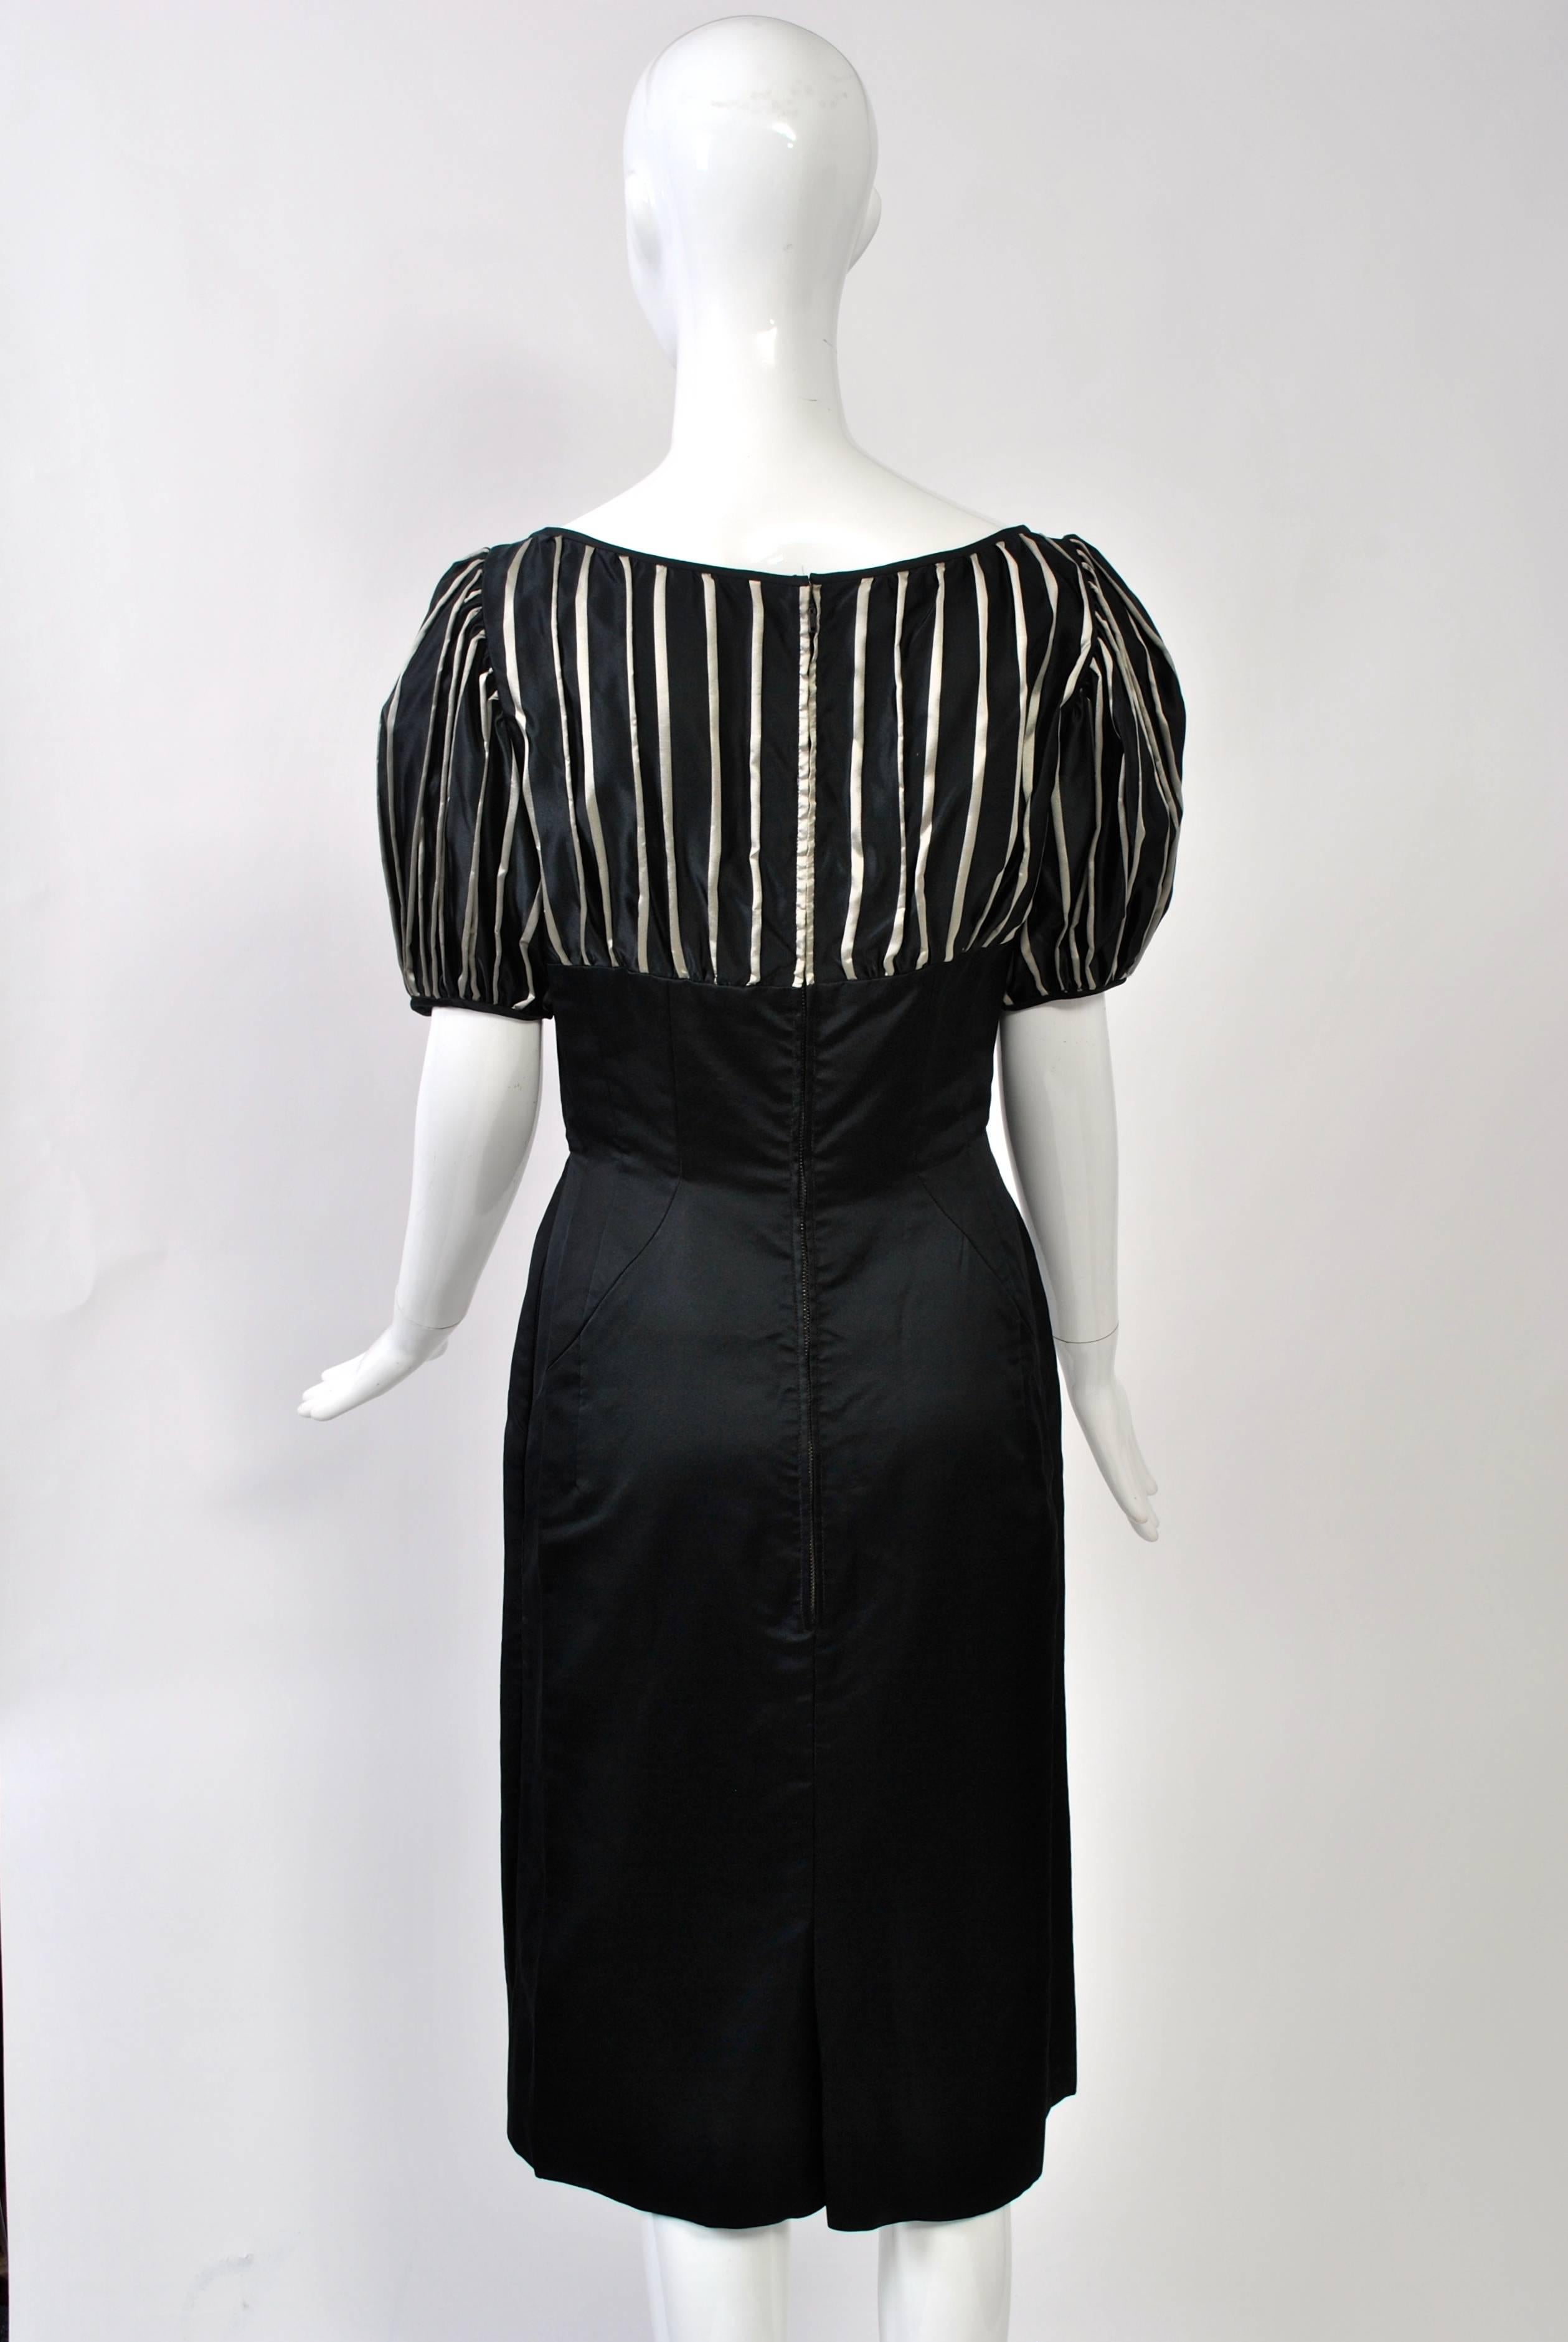 Estevez 1950s Black and Silver Cocktail Dress 1